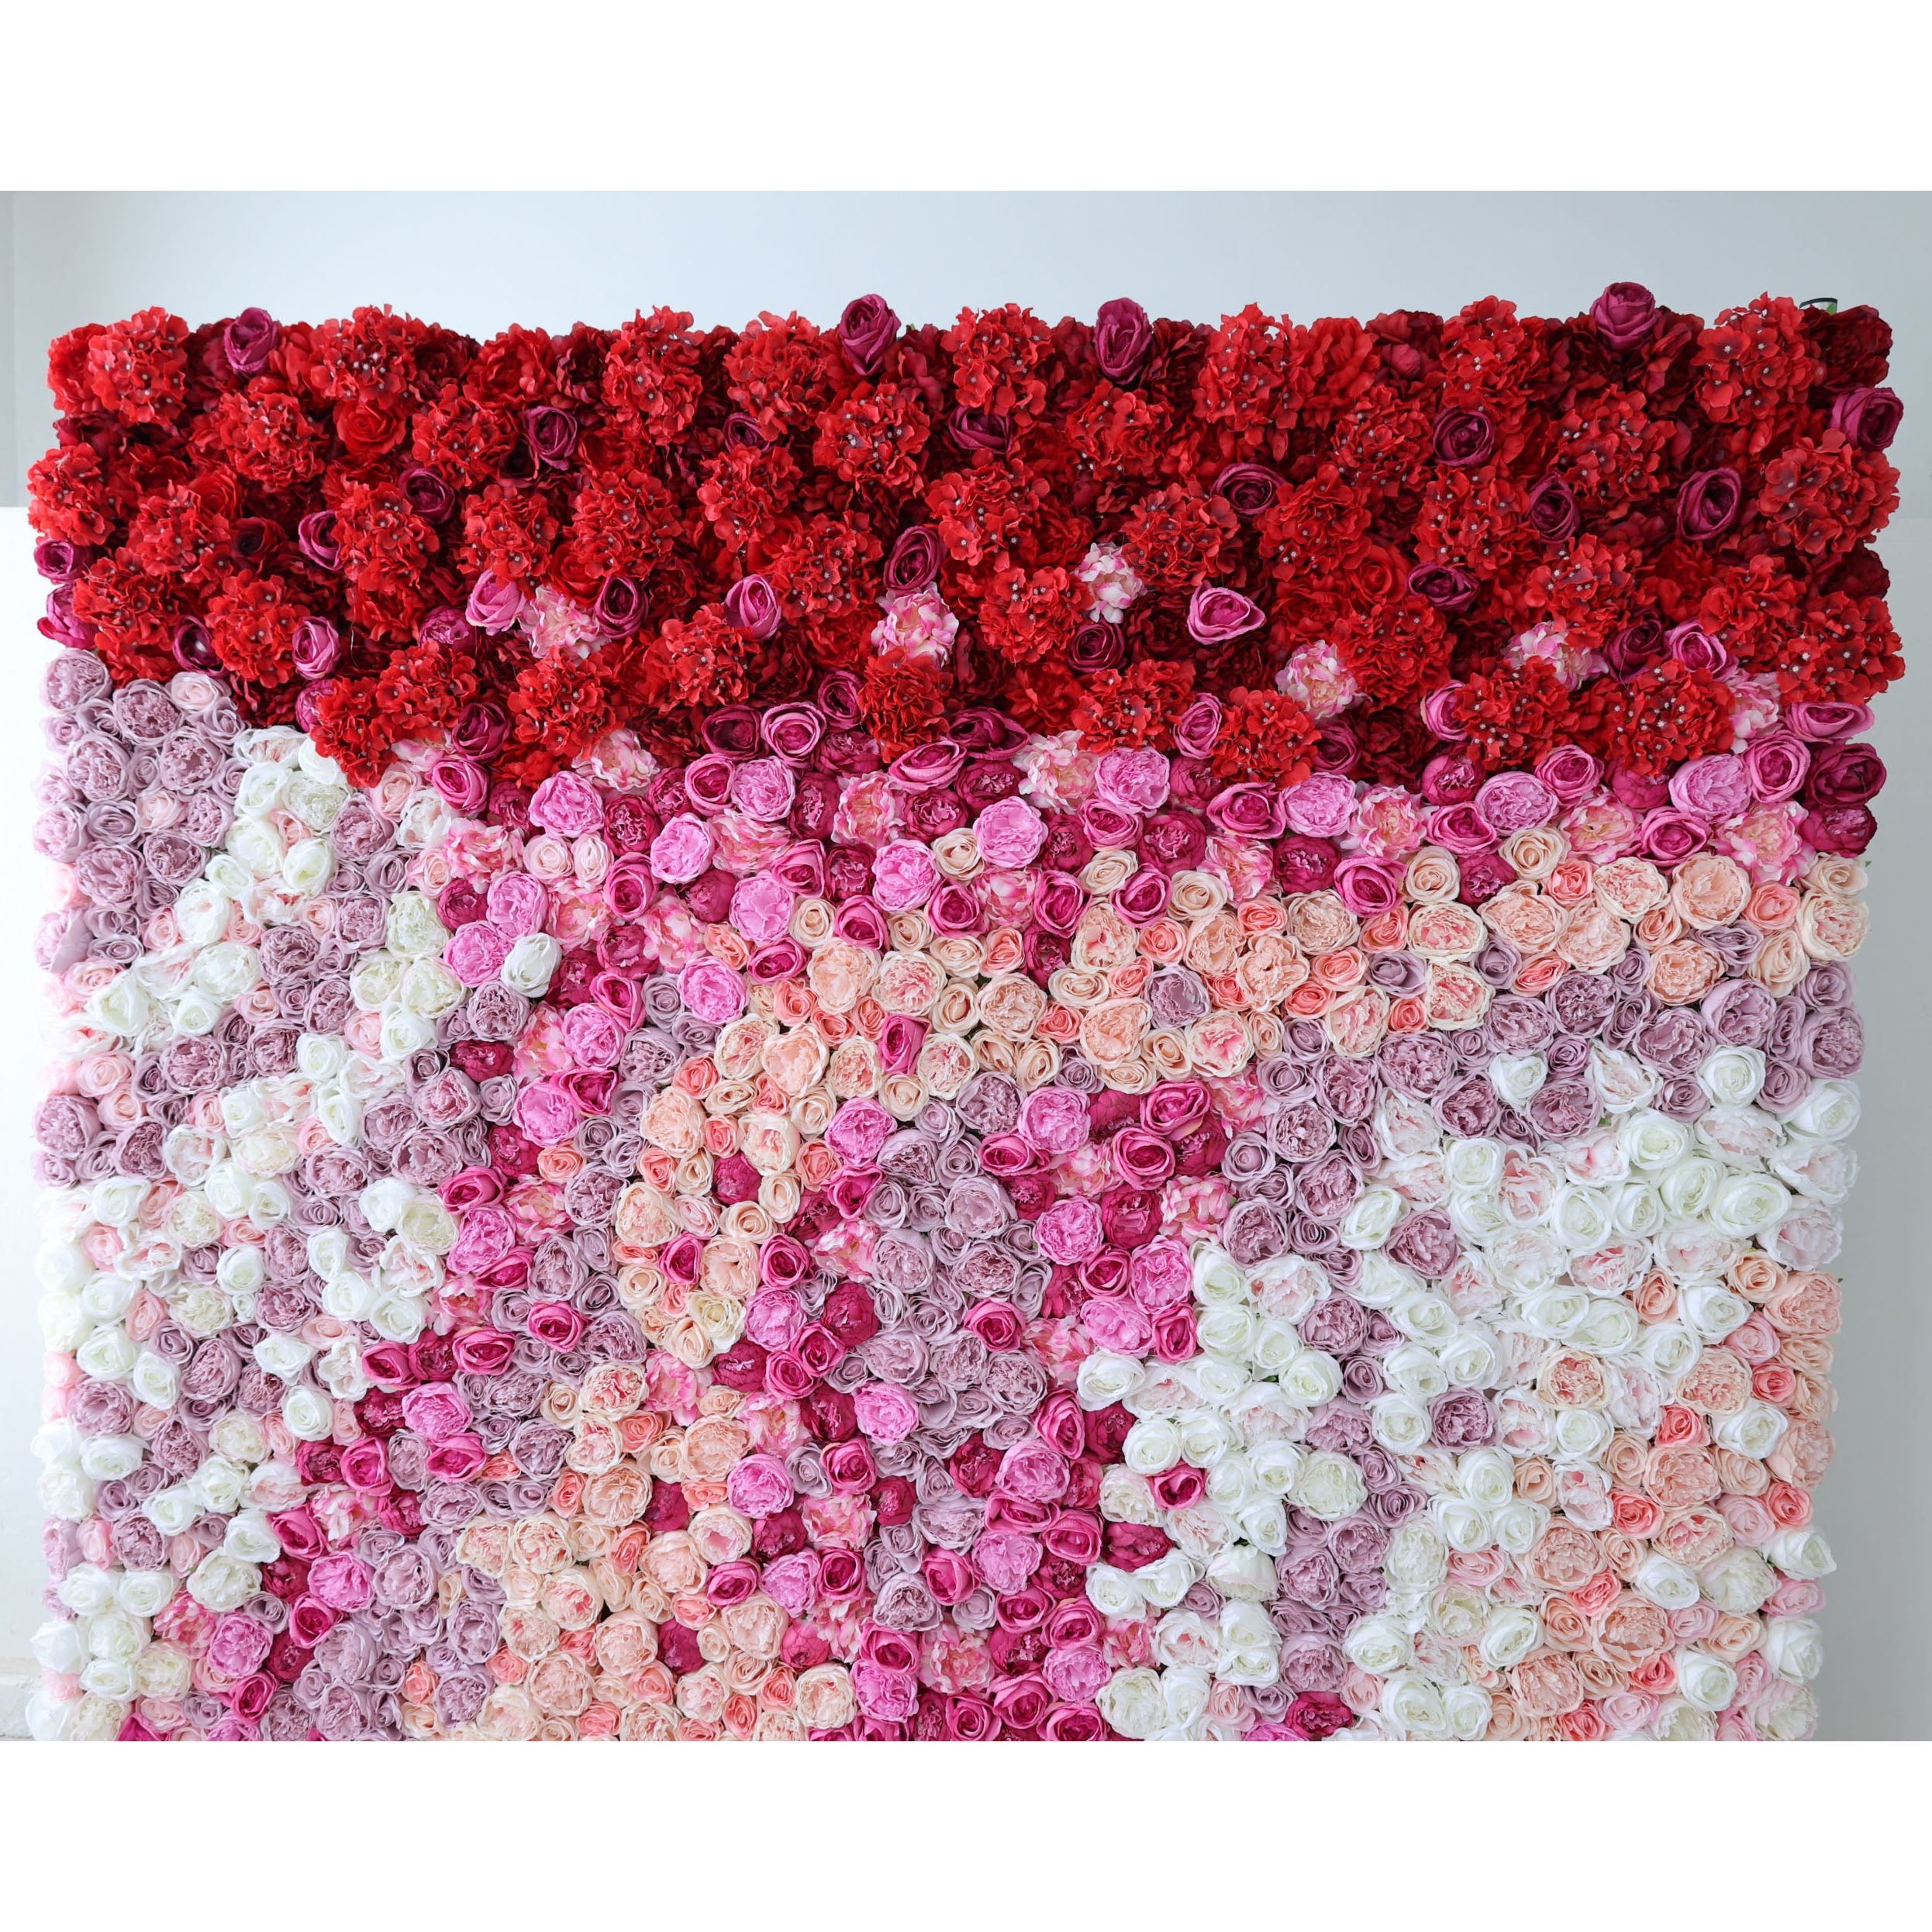 زهور فالار لفة قماش صناعي أحمر إلى وردي خلفية جدار زهور متدرجة ، ديكور حفلات زهور ، حدث